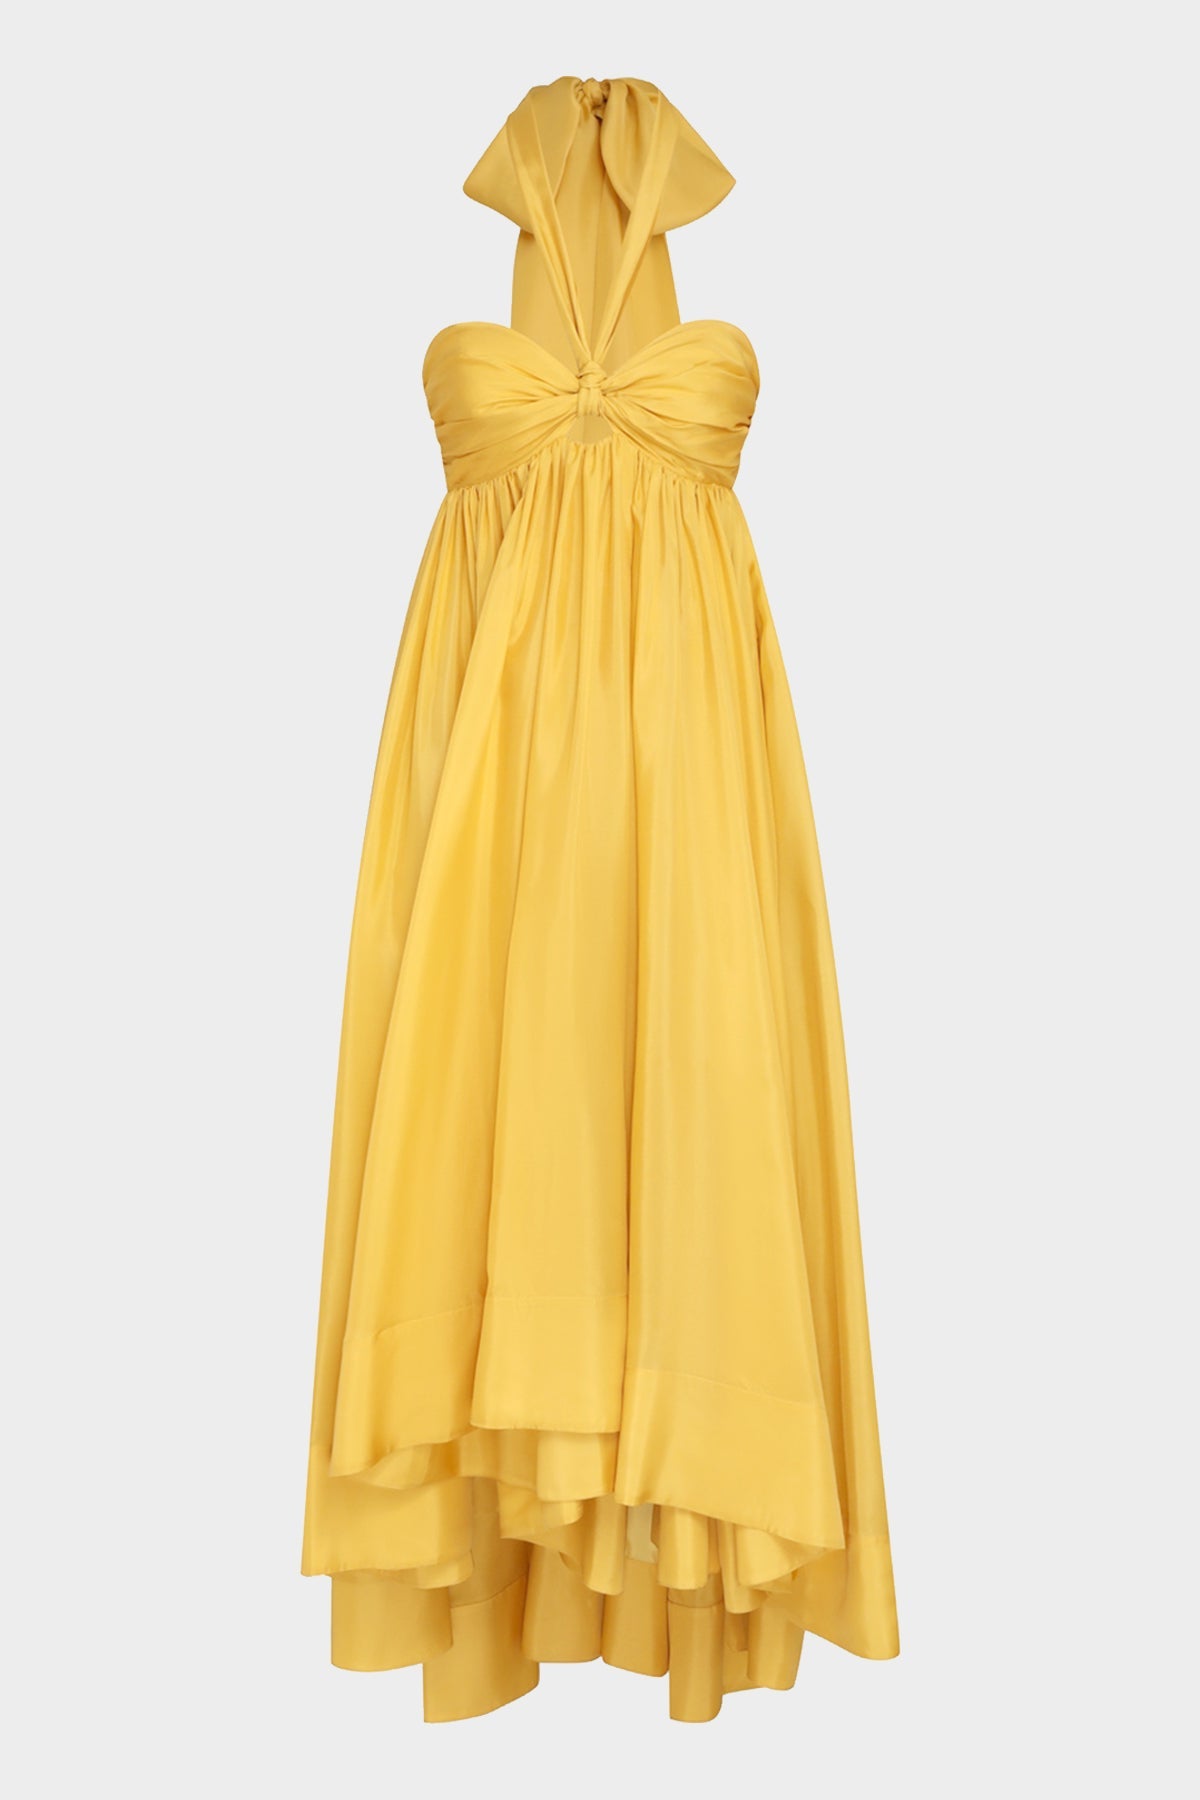 Devi Halter Maxi Dress in Mustard - shop-olivia.com